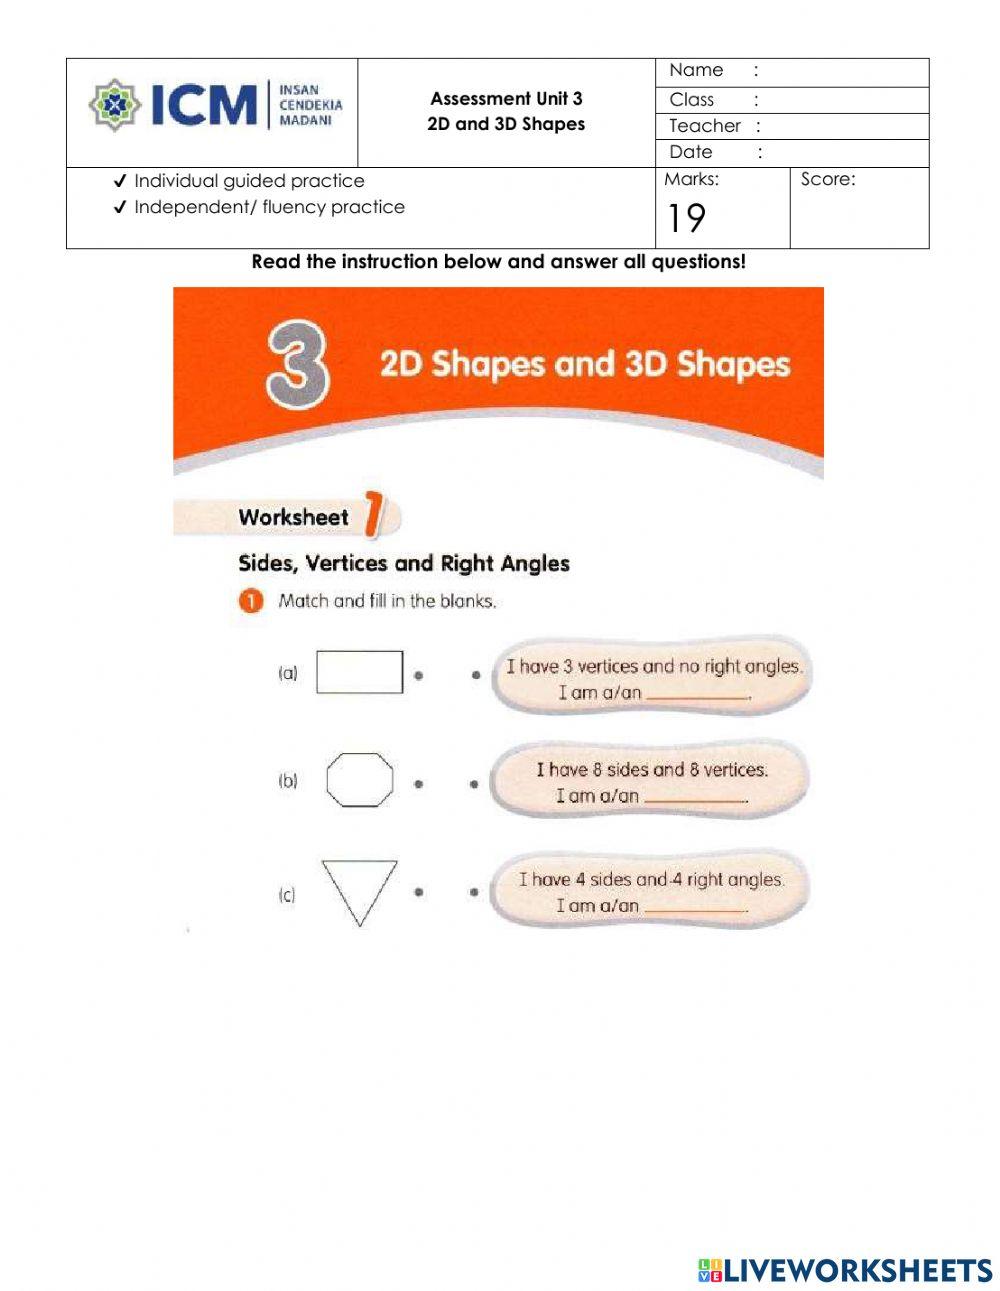 Assessment Unit 3 2D and 3D Shapes